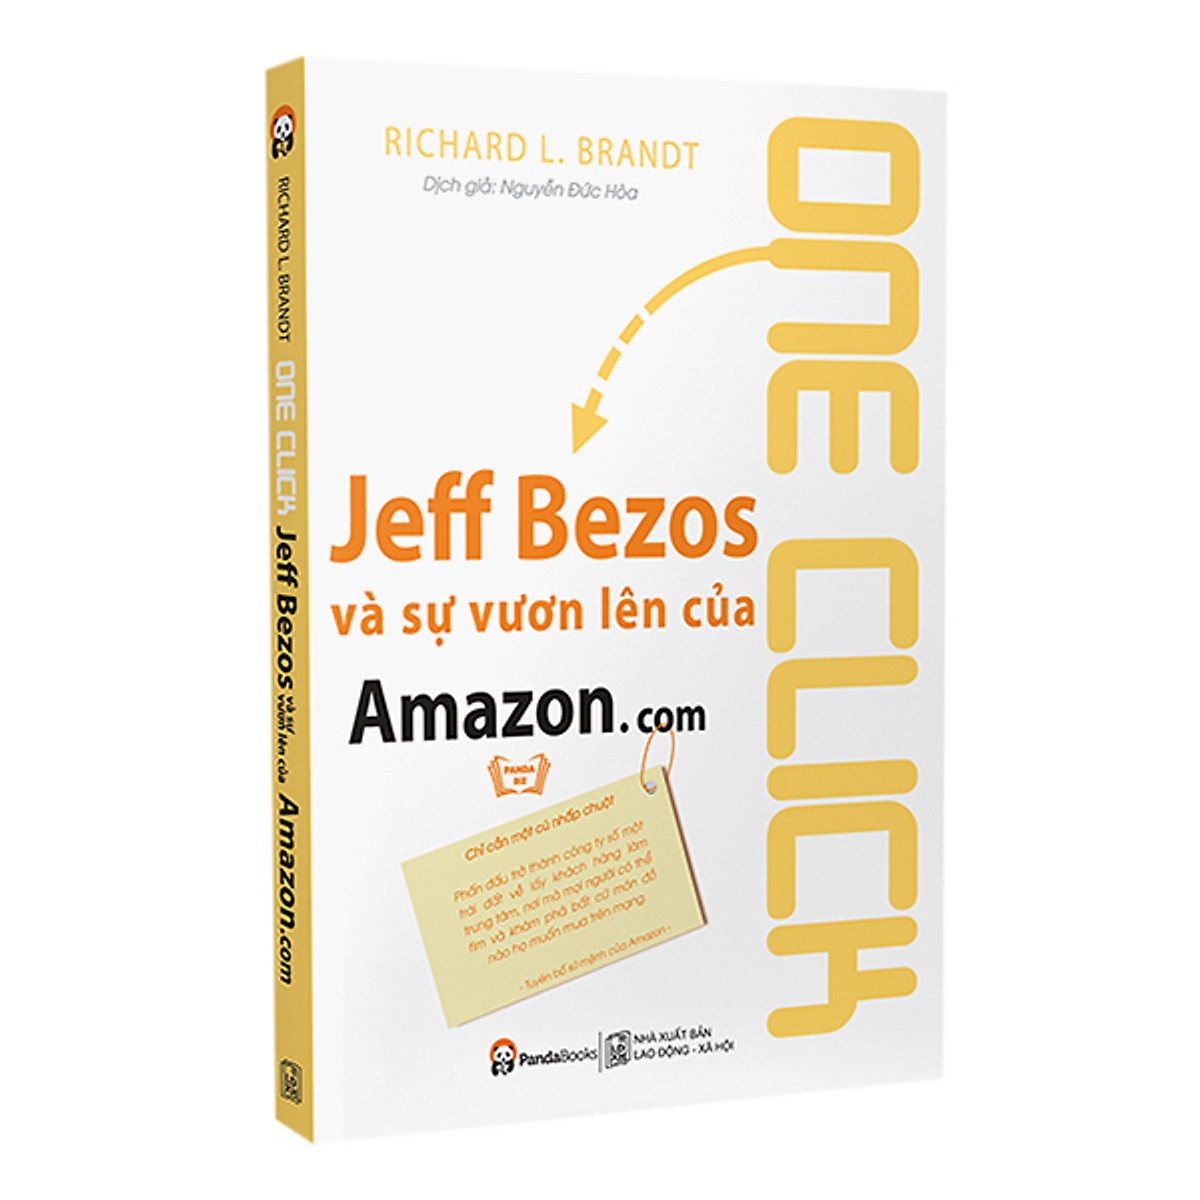 One Click - Jeff Bezos Và Sự Vươn Lên Của Amazon.com ebook PDF-EPUB-AWZ3-PRC-MOBI